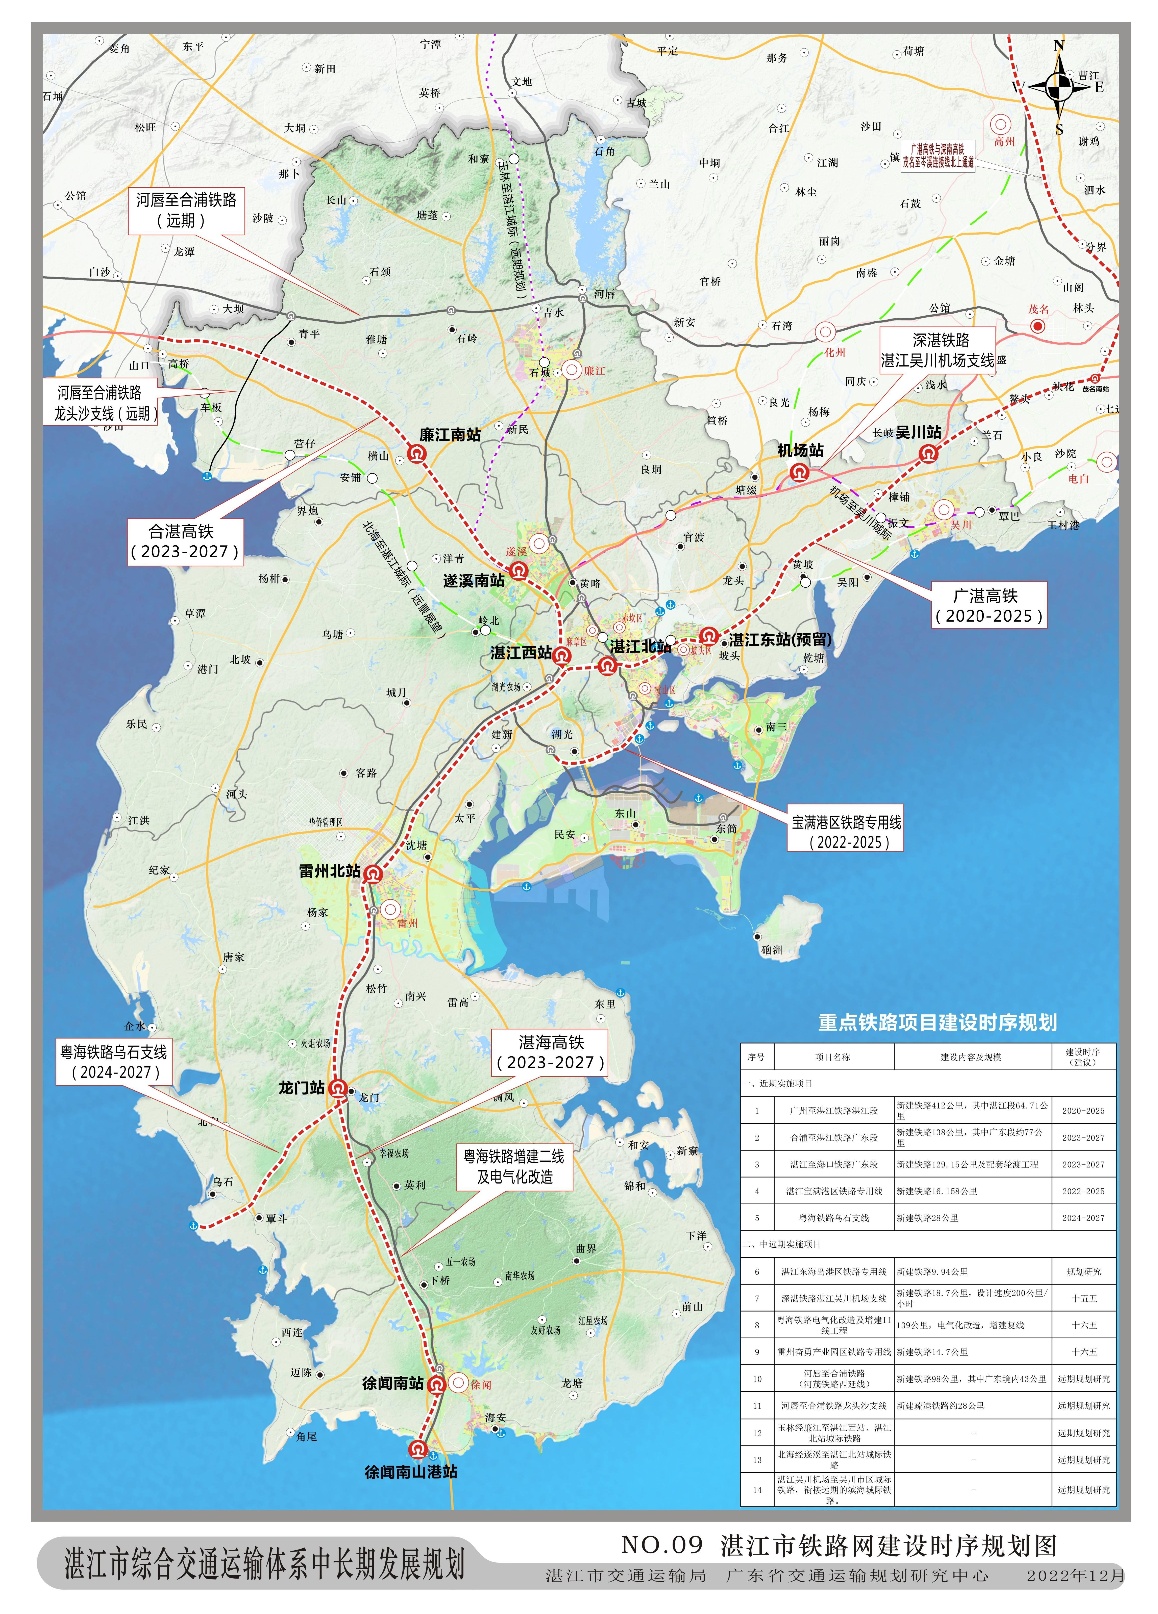 湛江至海口高速铁路项目有望2023年开工建设